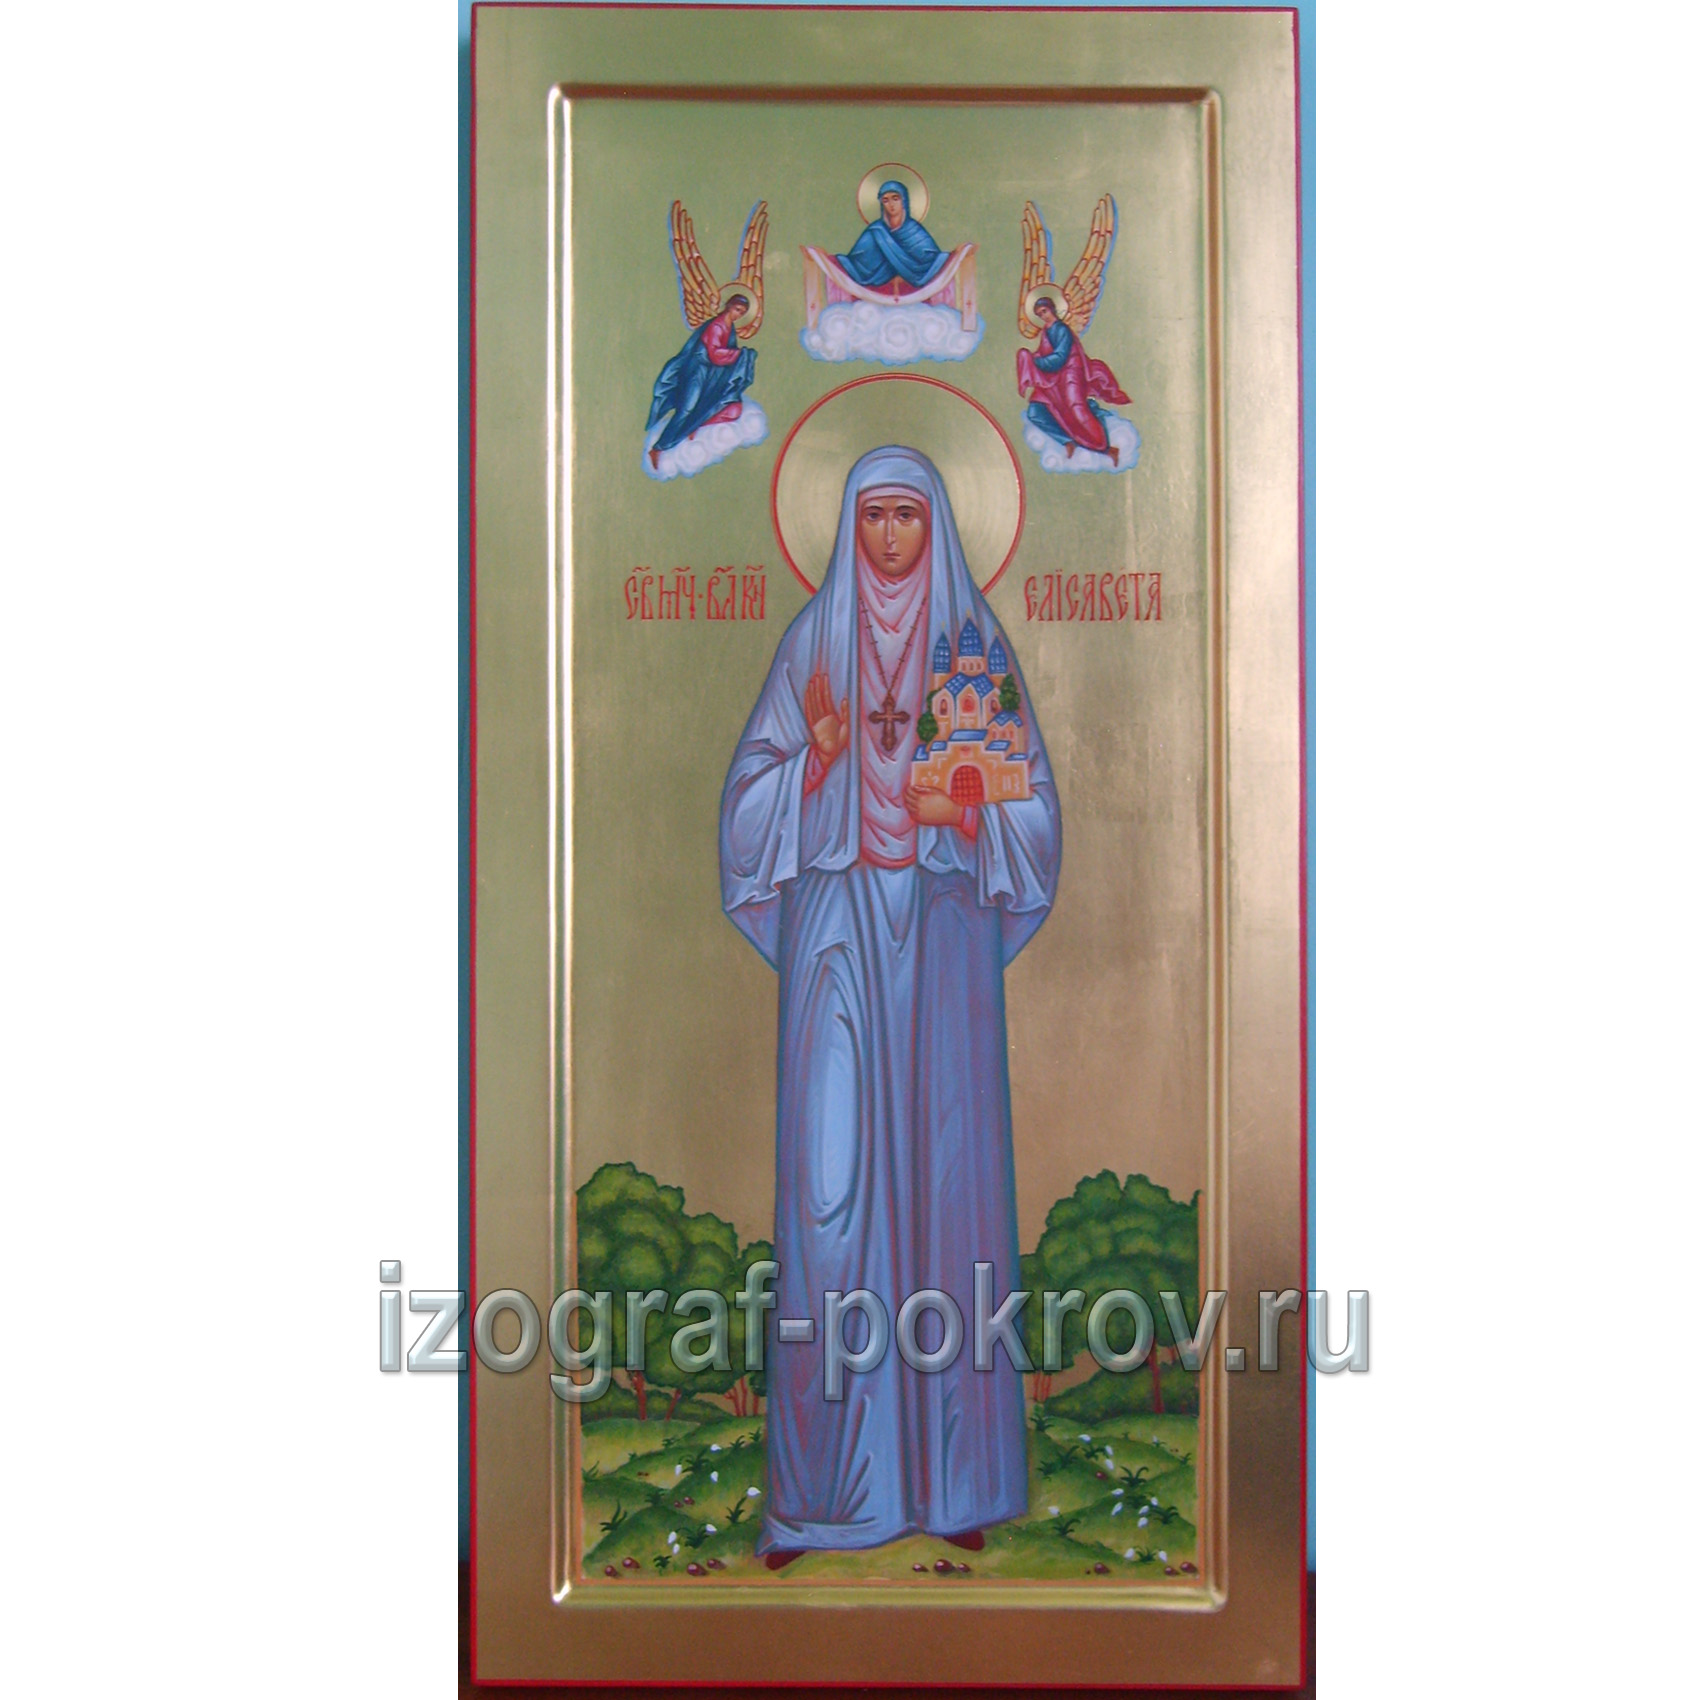 Мерная икона великомученица Елисавета (Елизавета)